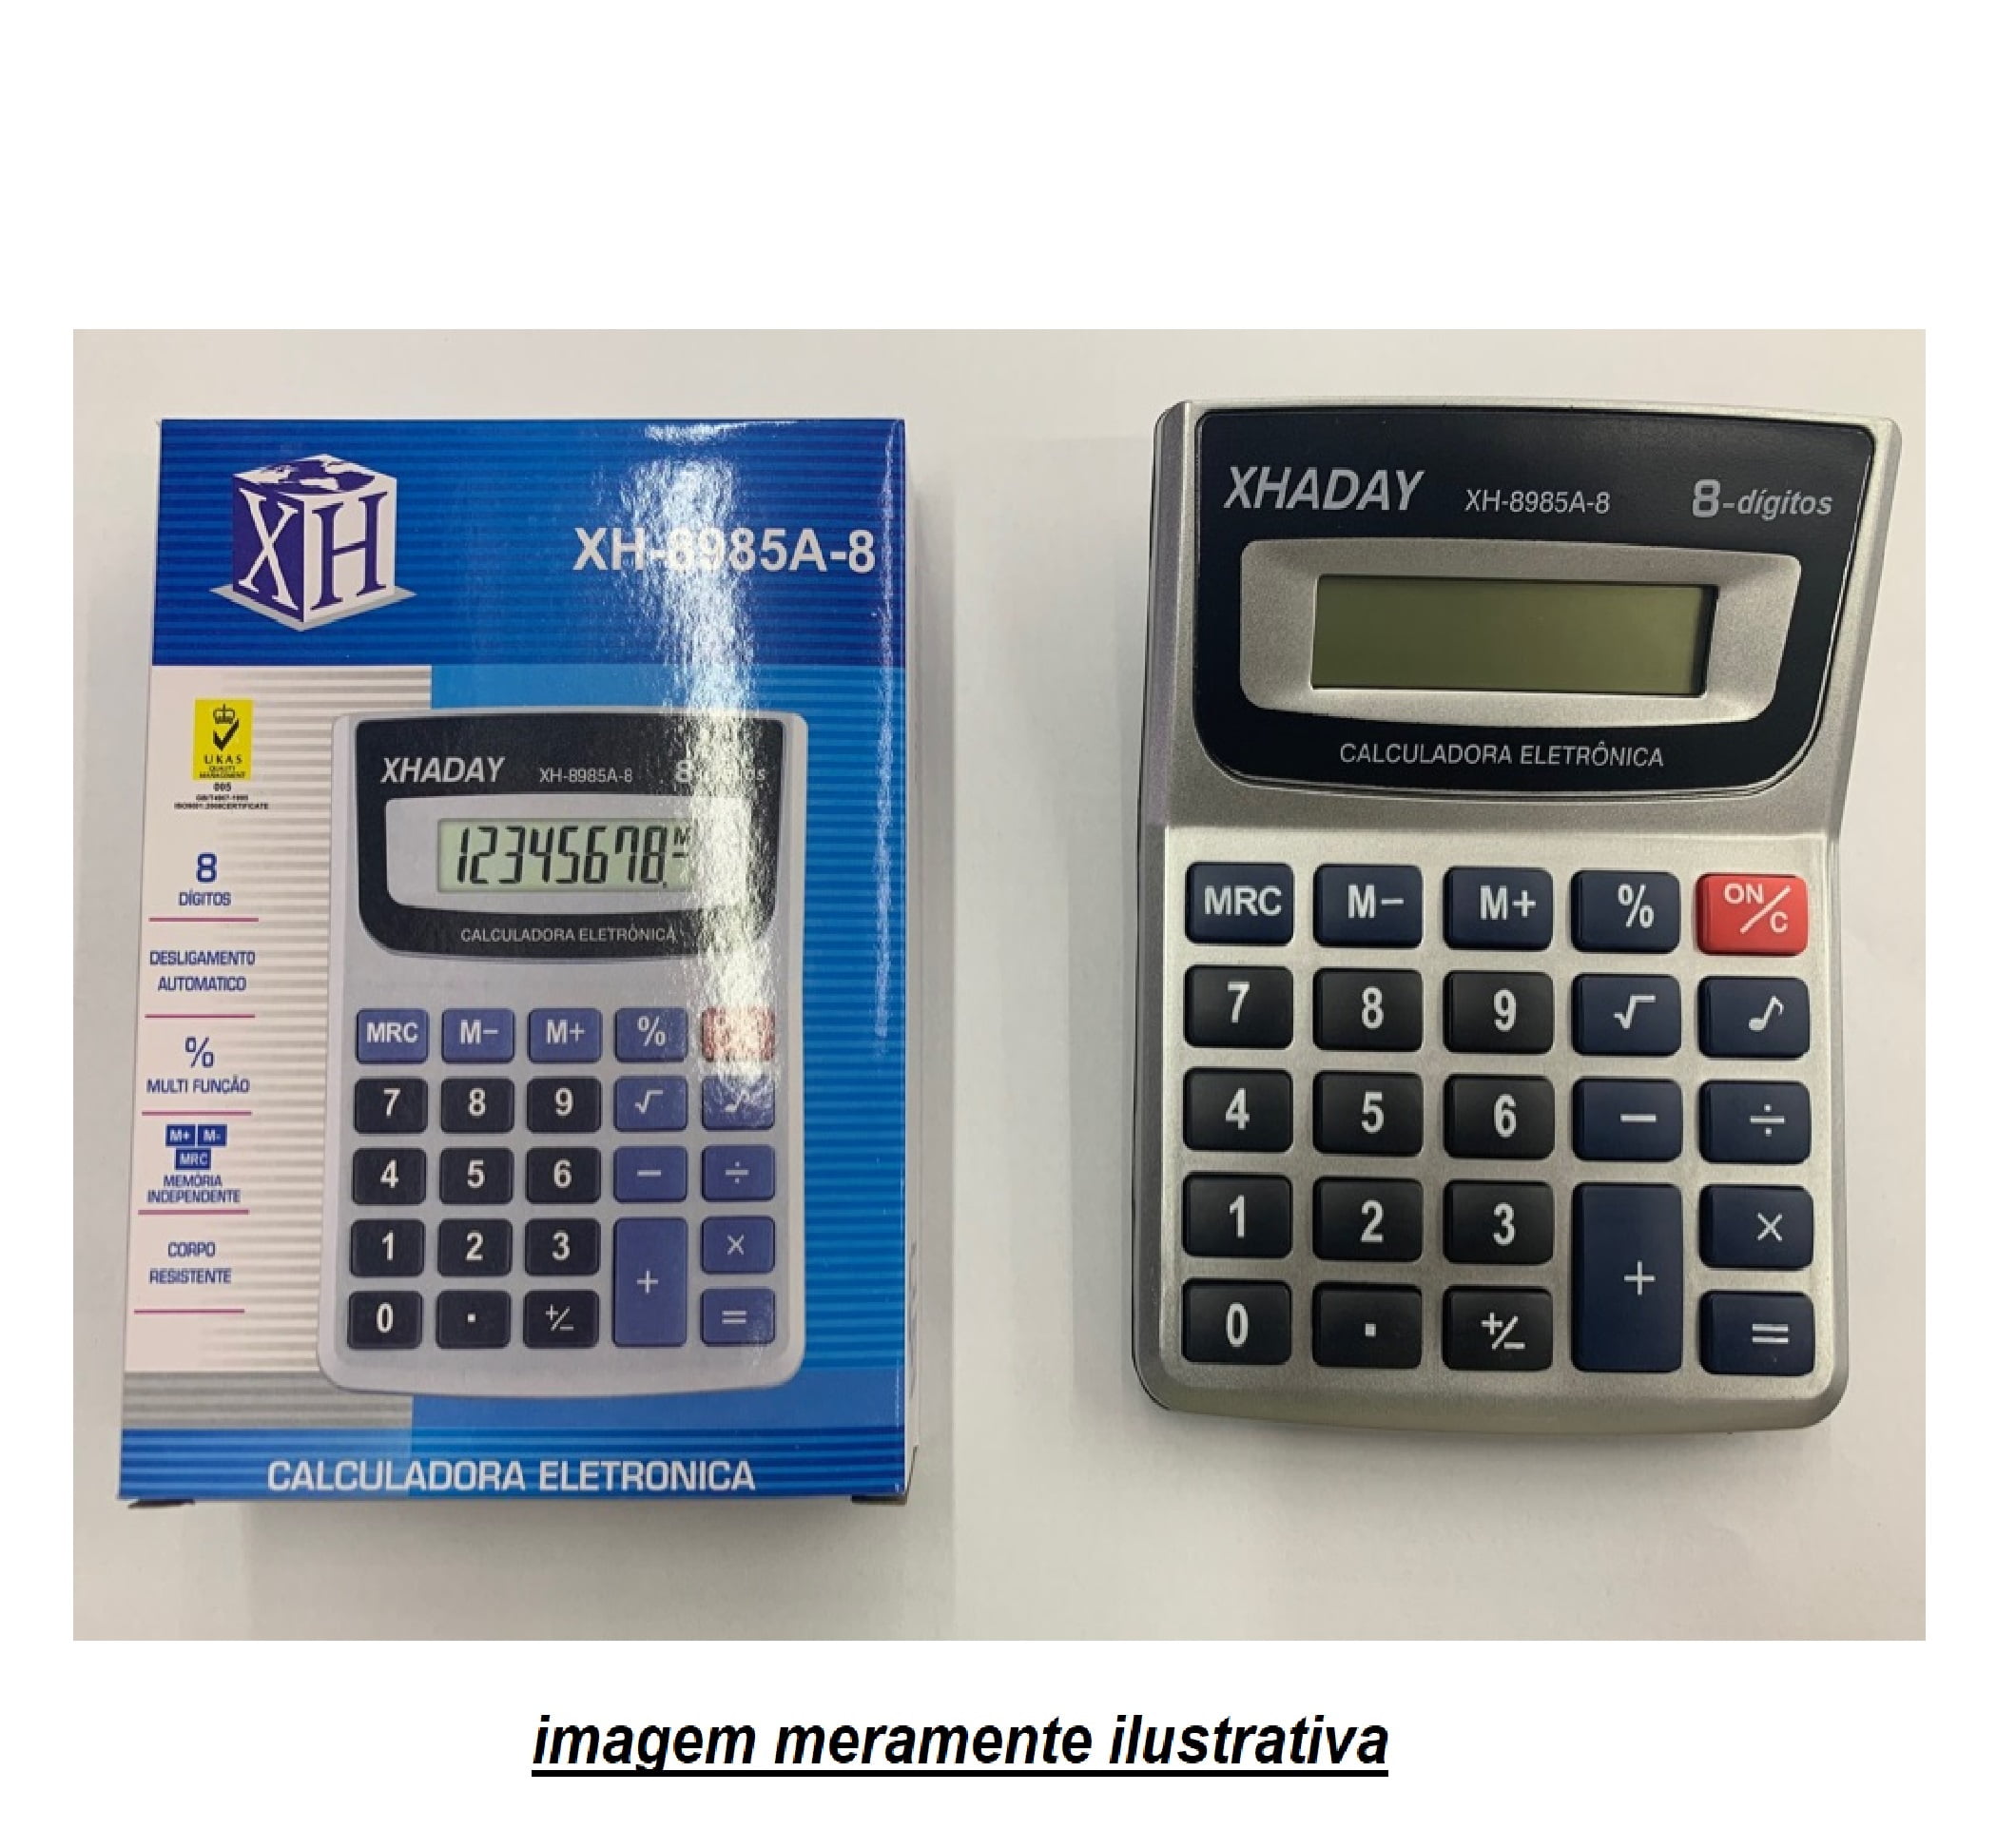  Calculadora XH-8985-8 